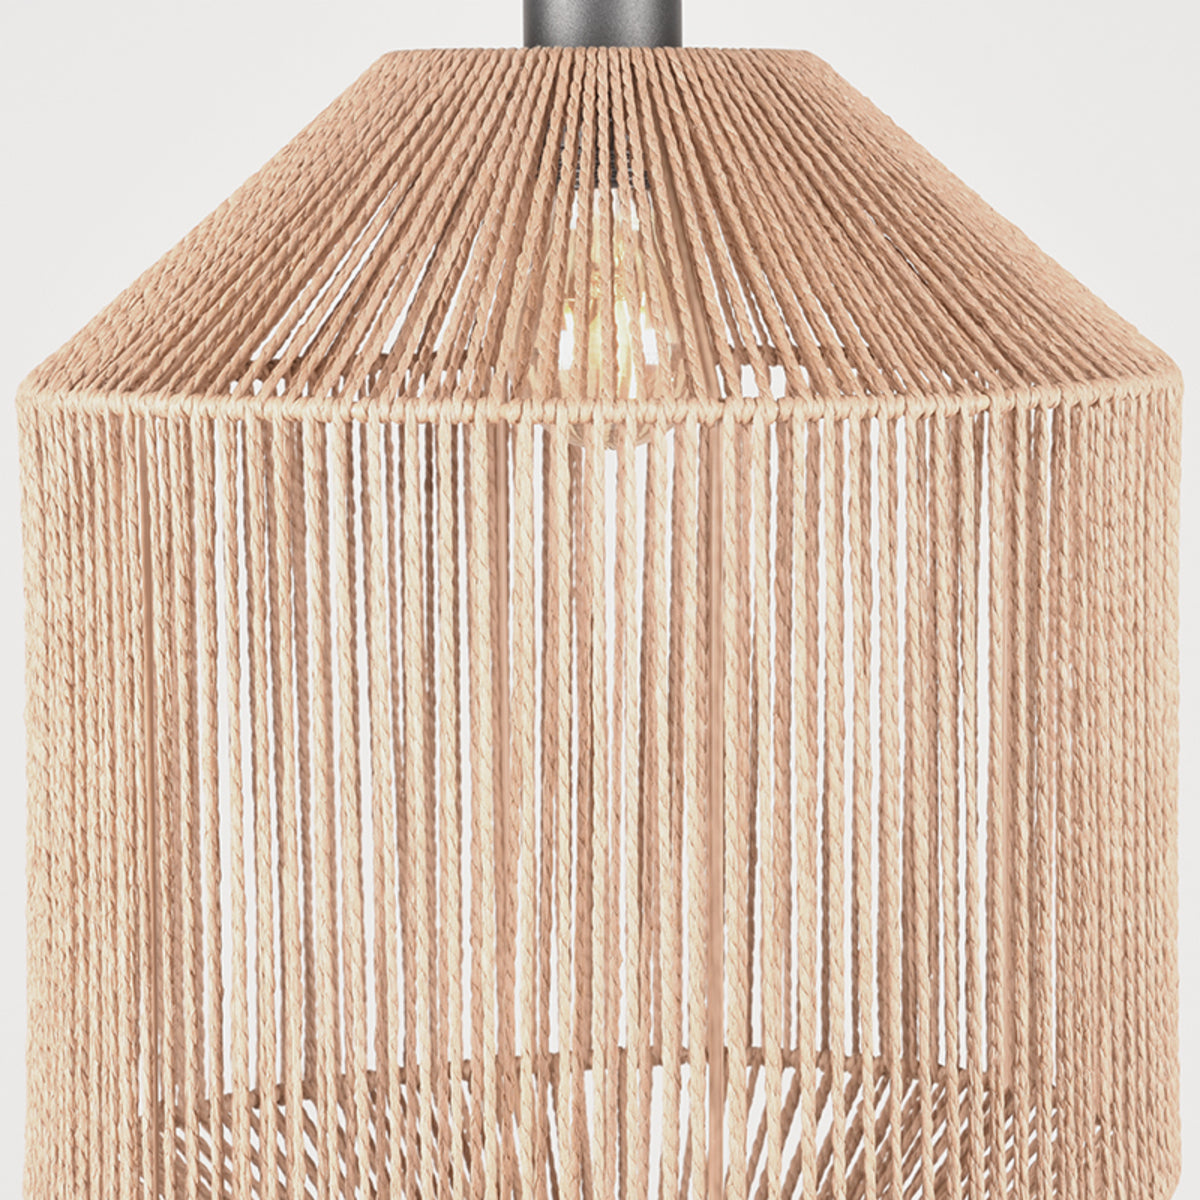 LABEL51 Hanging Lamp Ibiza - Natural - Jute - 1-Light Cylinder